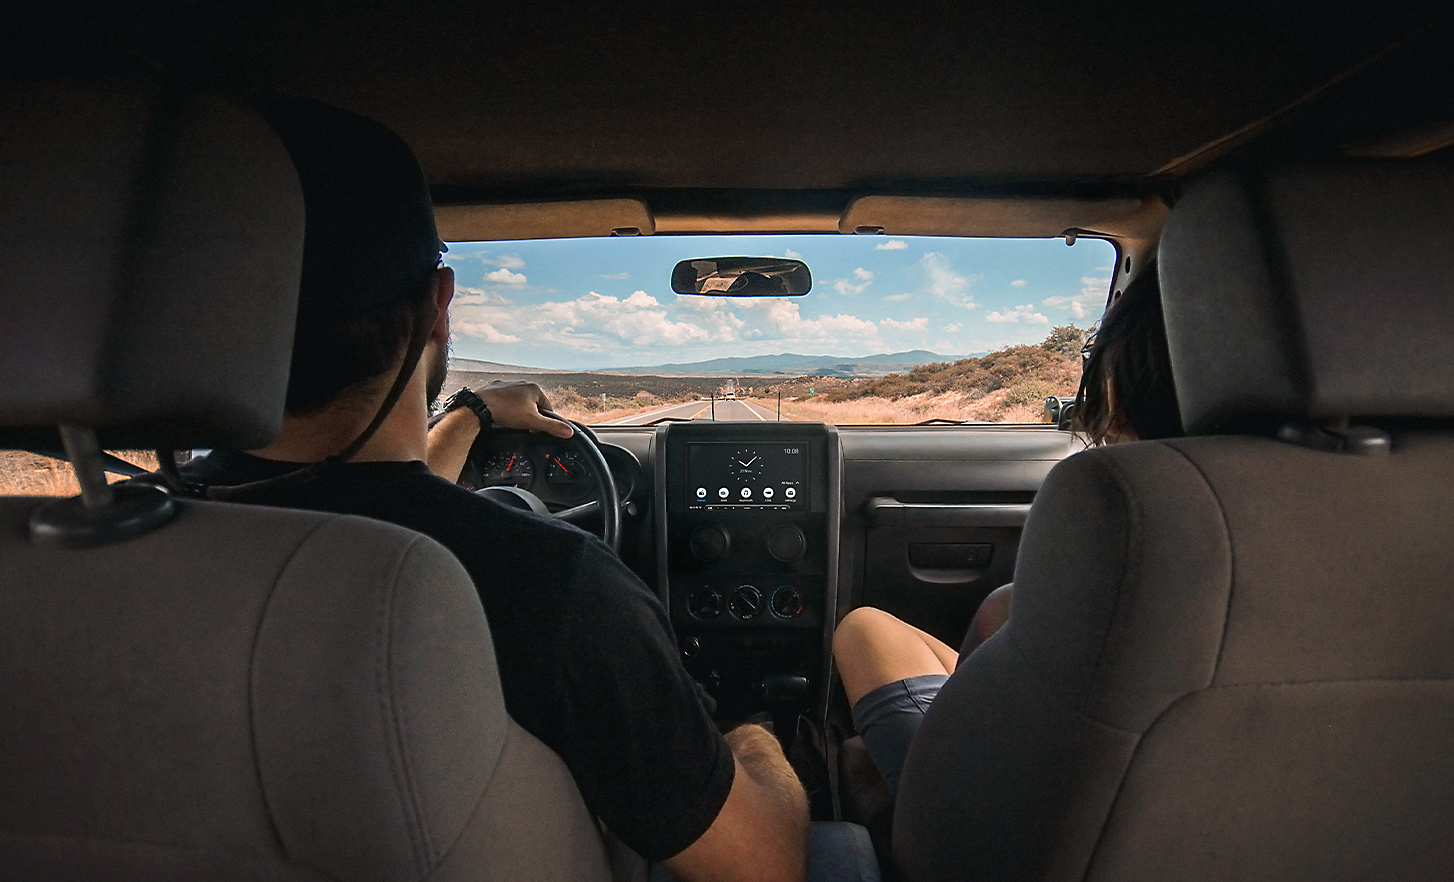 Image de deux personnes en voiture dans un environnement désertique avec un XAV-AX6050 sur le tableau de bord